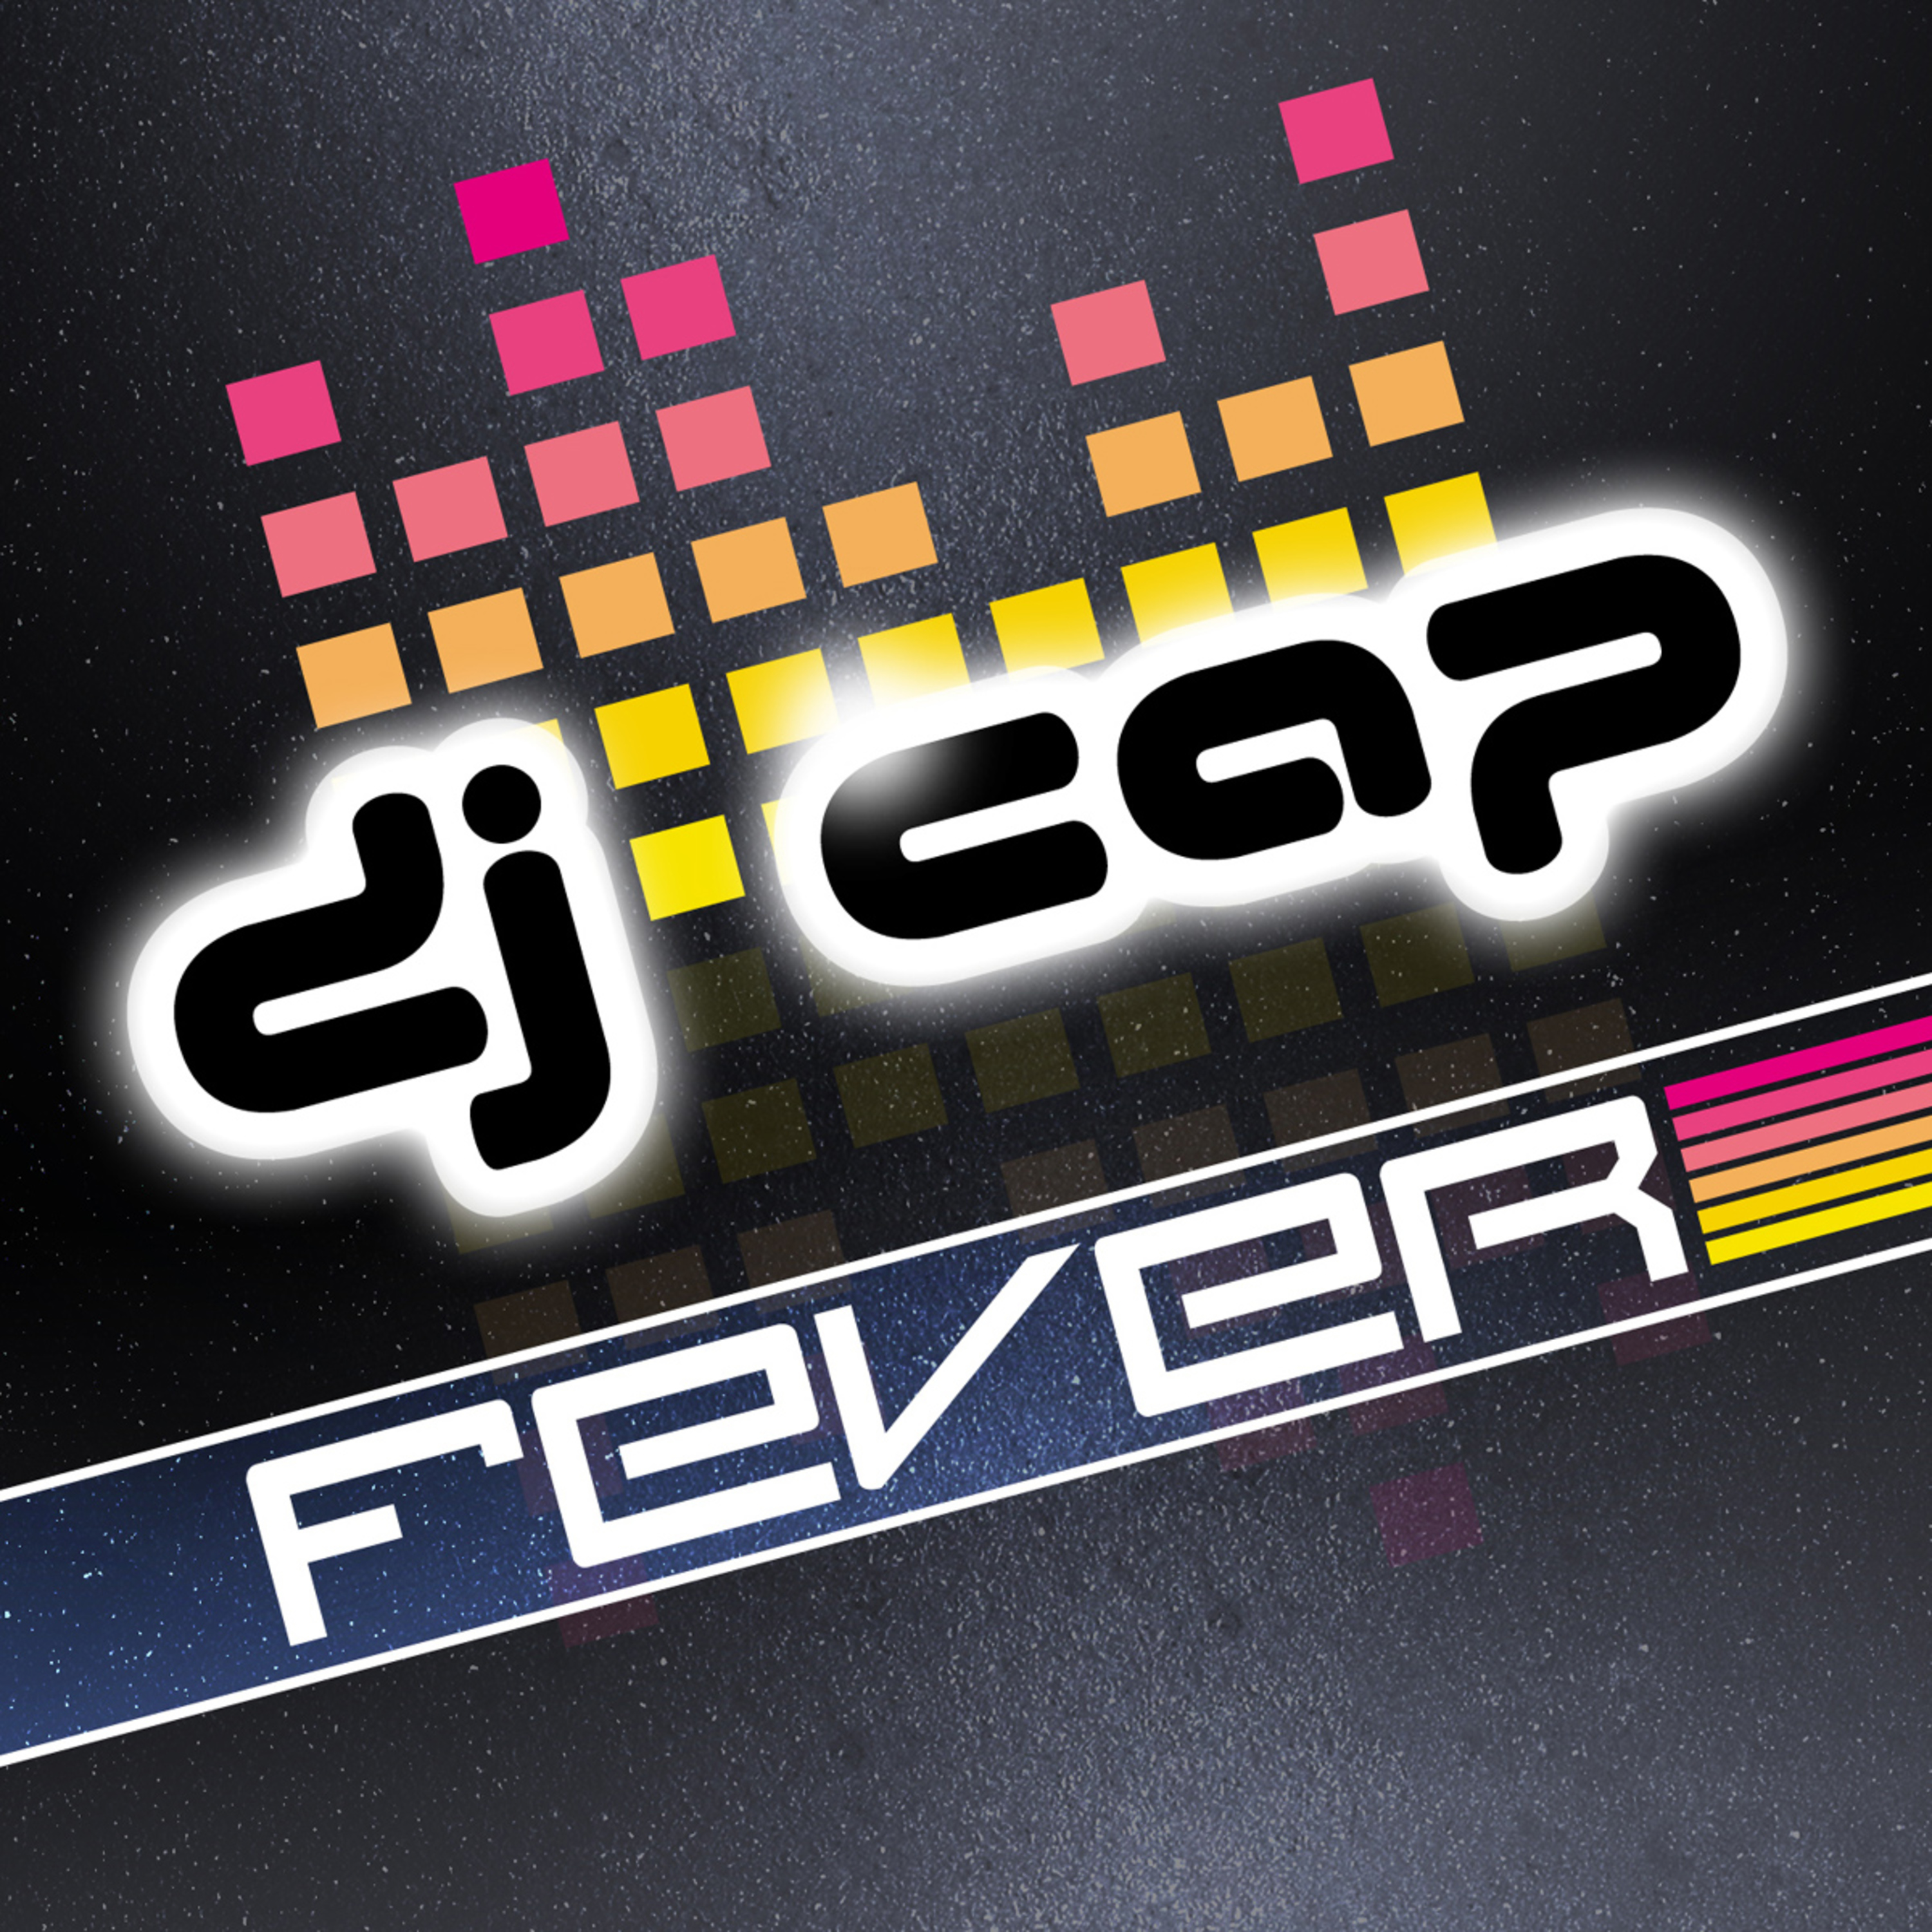 Fever (Original Club Mix)